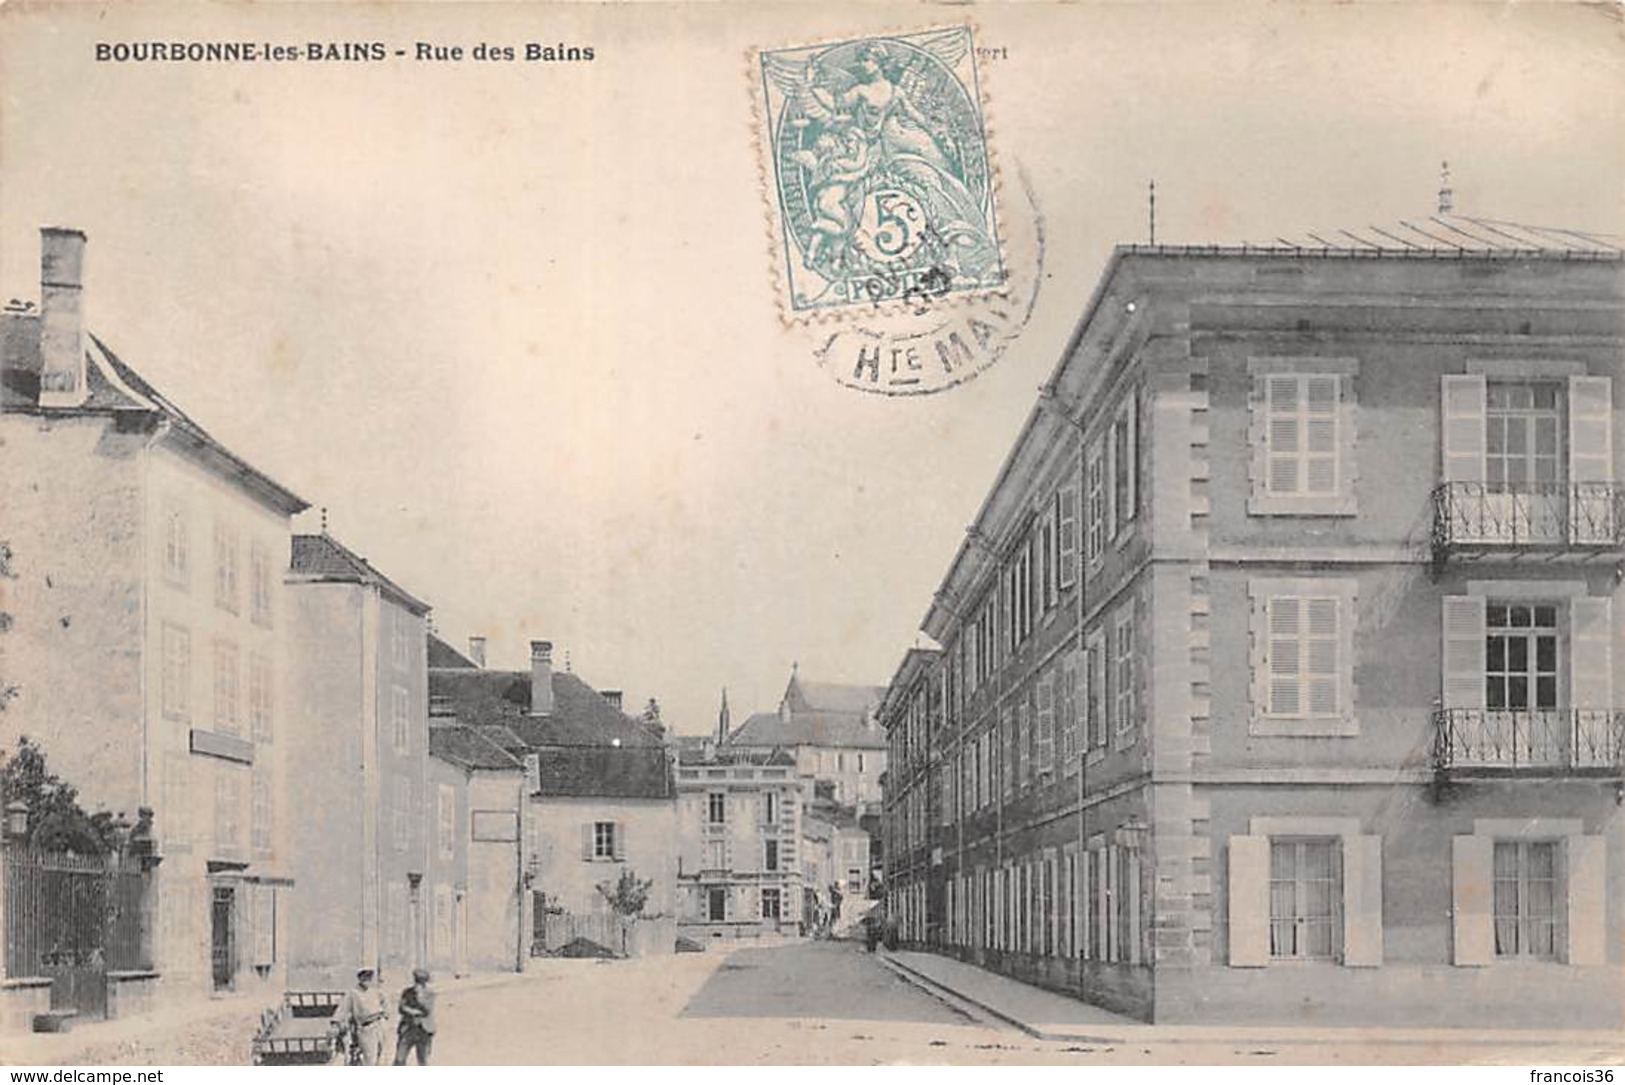 Lot de 35 cartes CPA de Bourbonne les Bains (52) Haute Marne